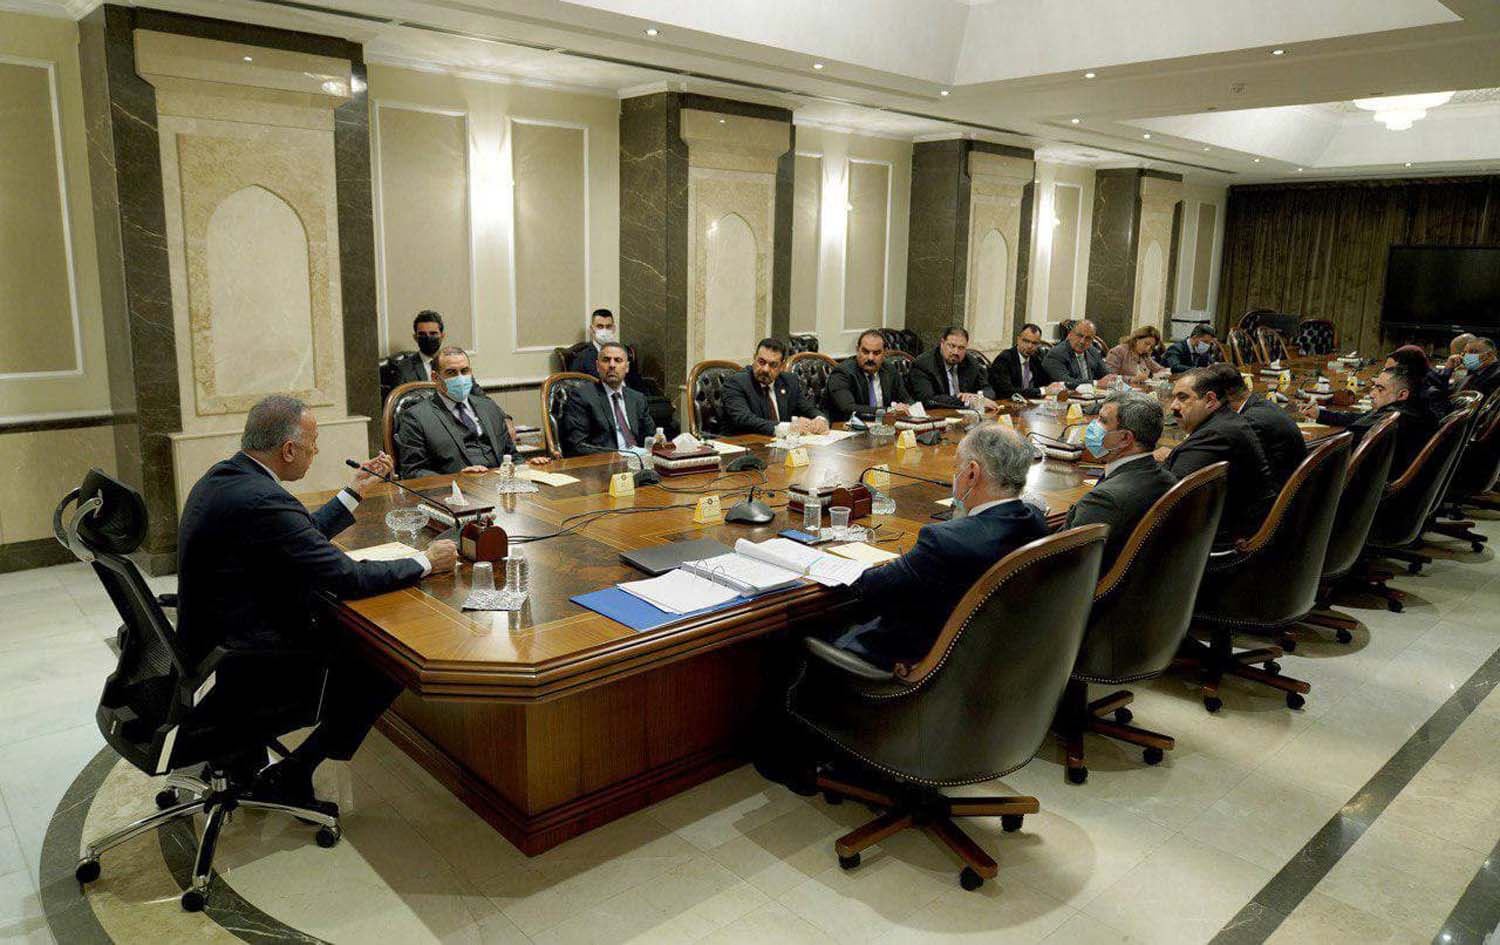 يحدث في العراق فقط..حضور رؤساء اللجان النيابية اجتماعات مجلس الوزراء!